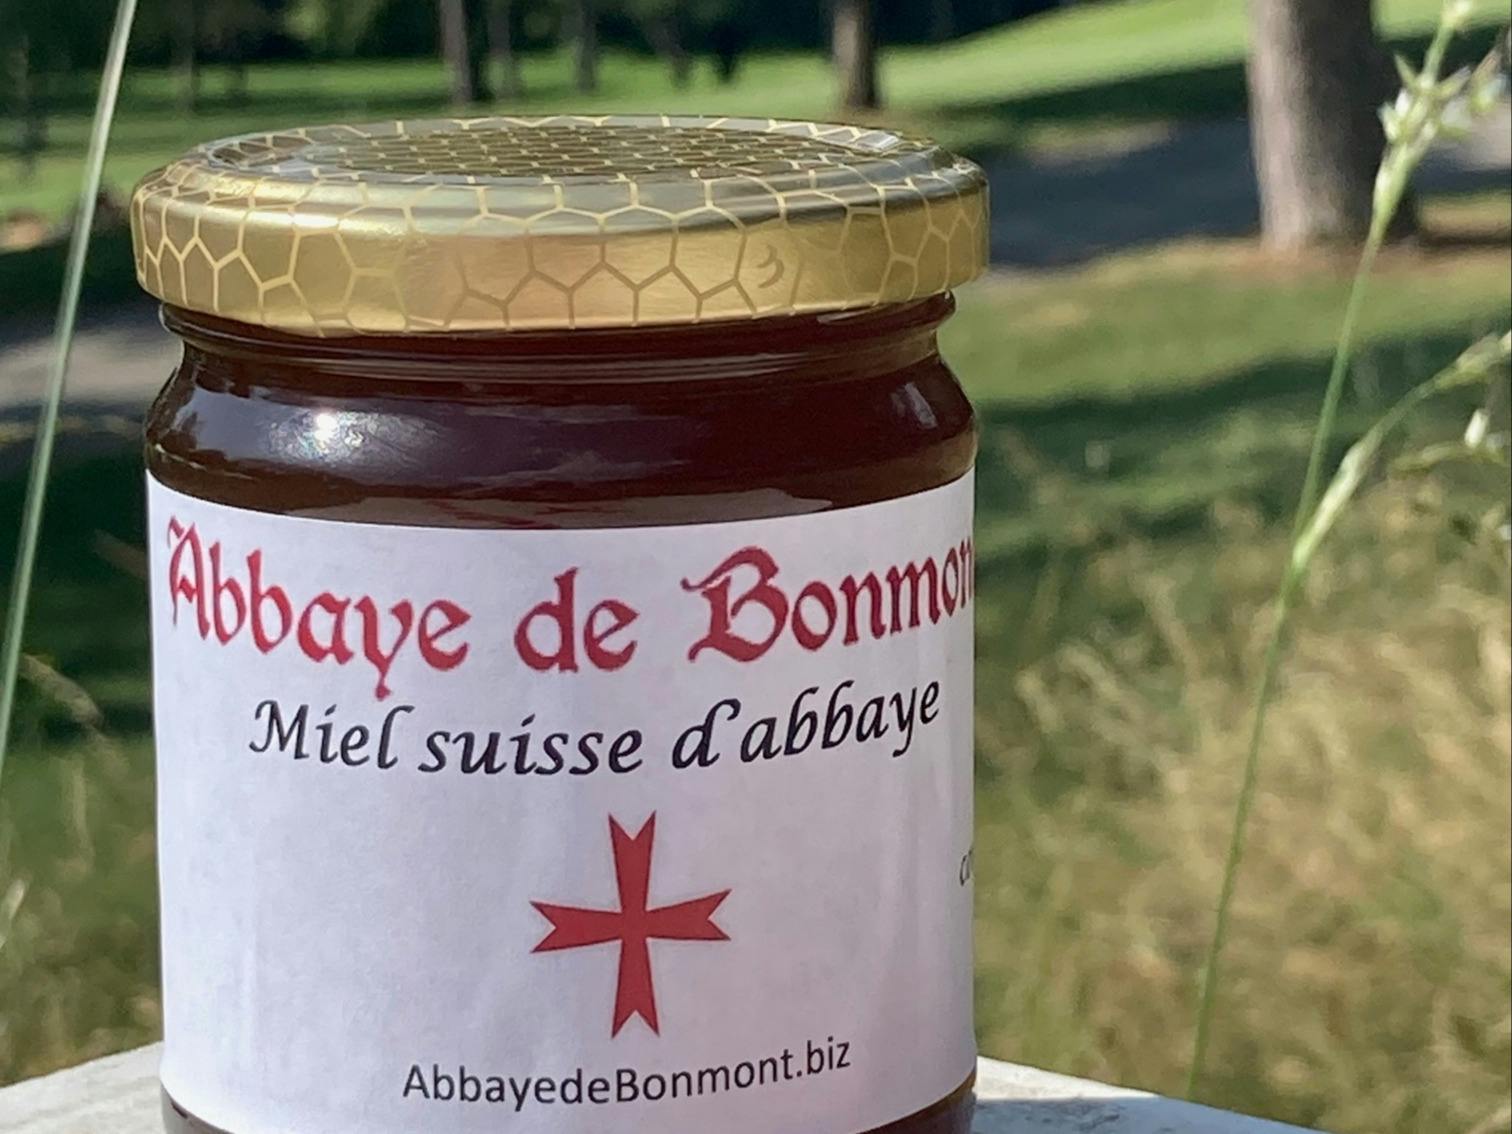 Abbaye de Bonmont - miel suisse d'abbaye, produit artisanal en vente directe en Suisse